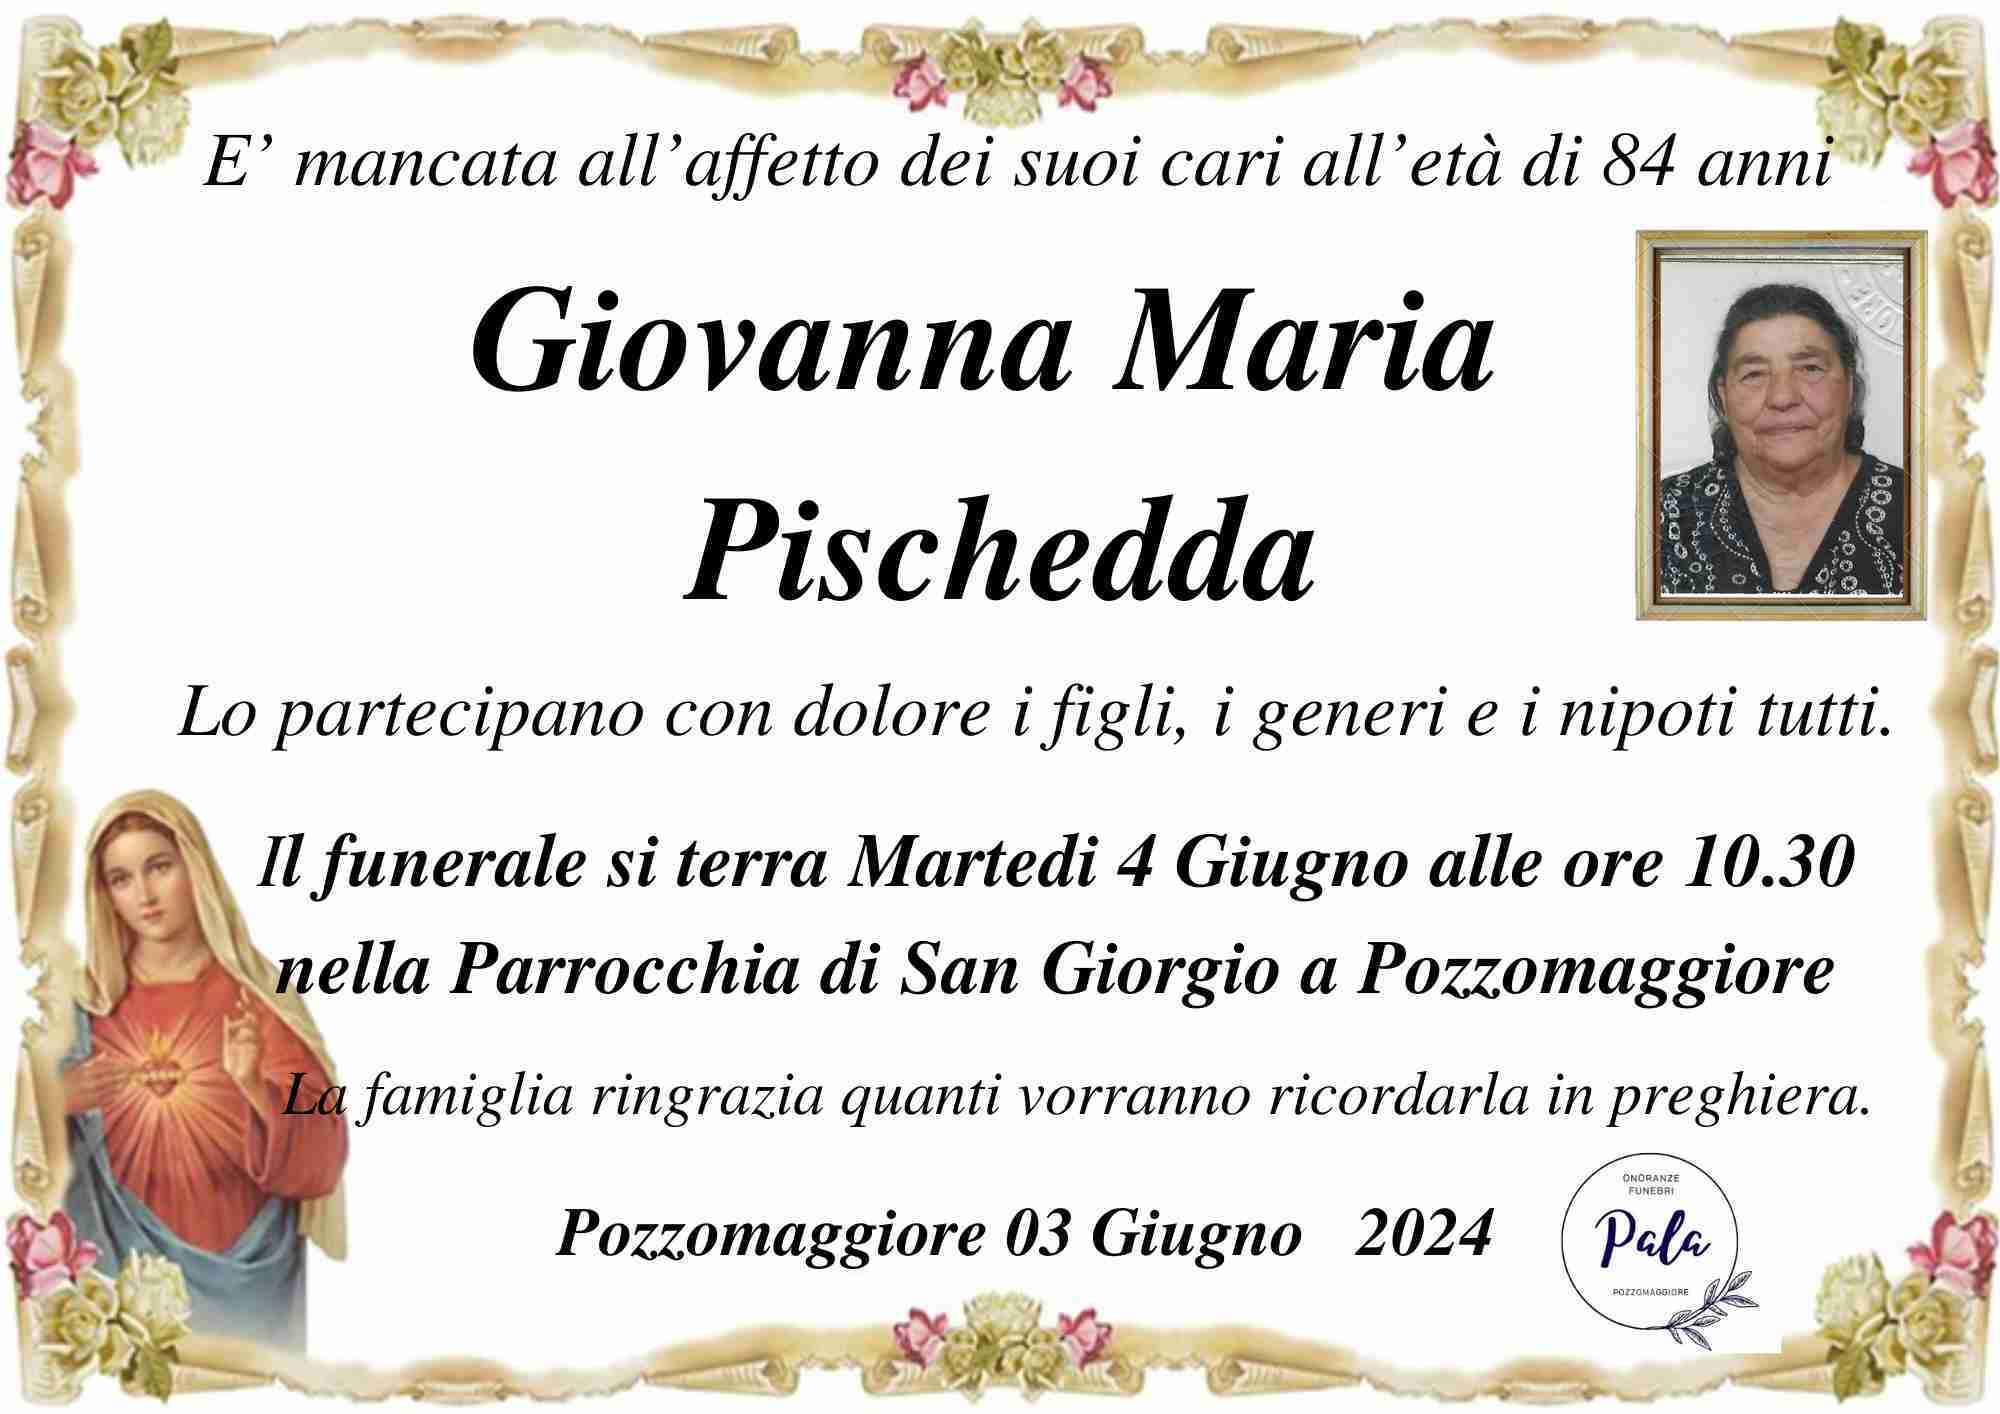 Giovanna Maria Pischedda